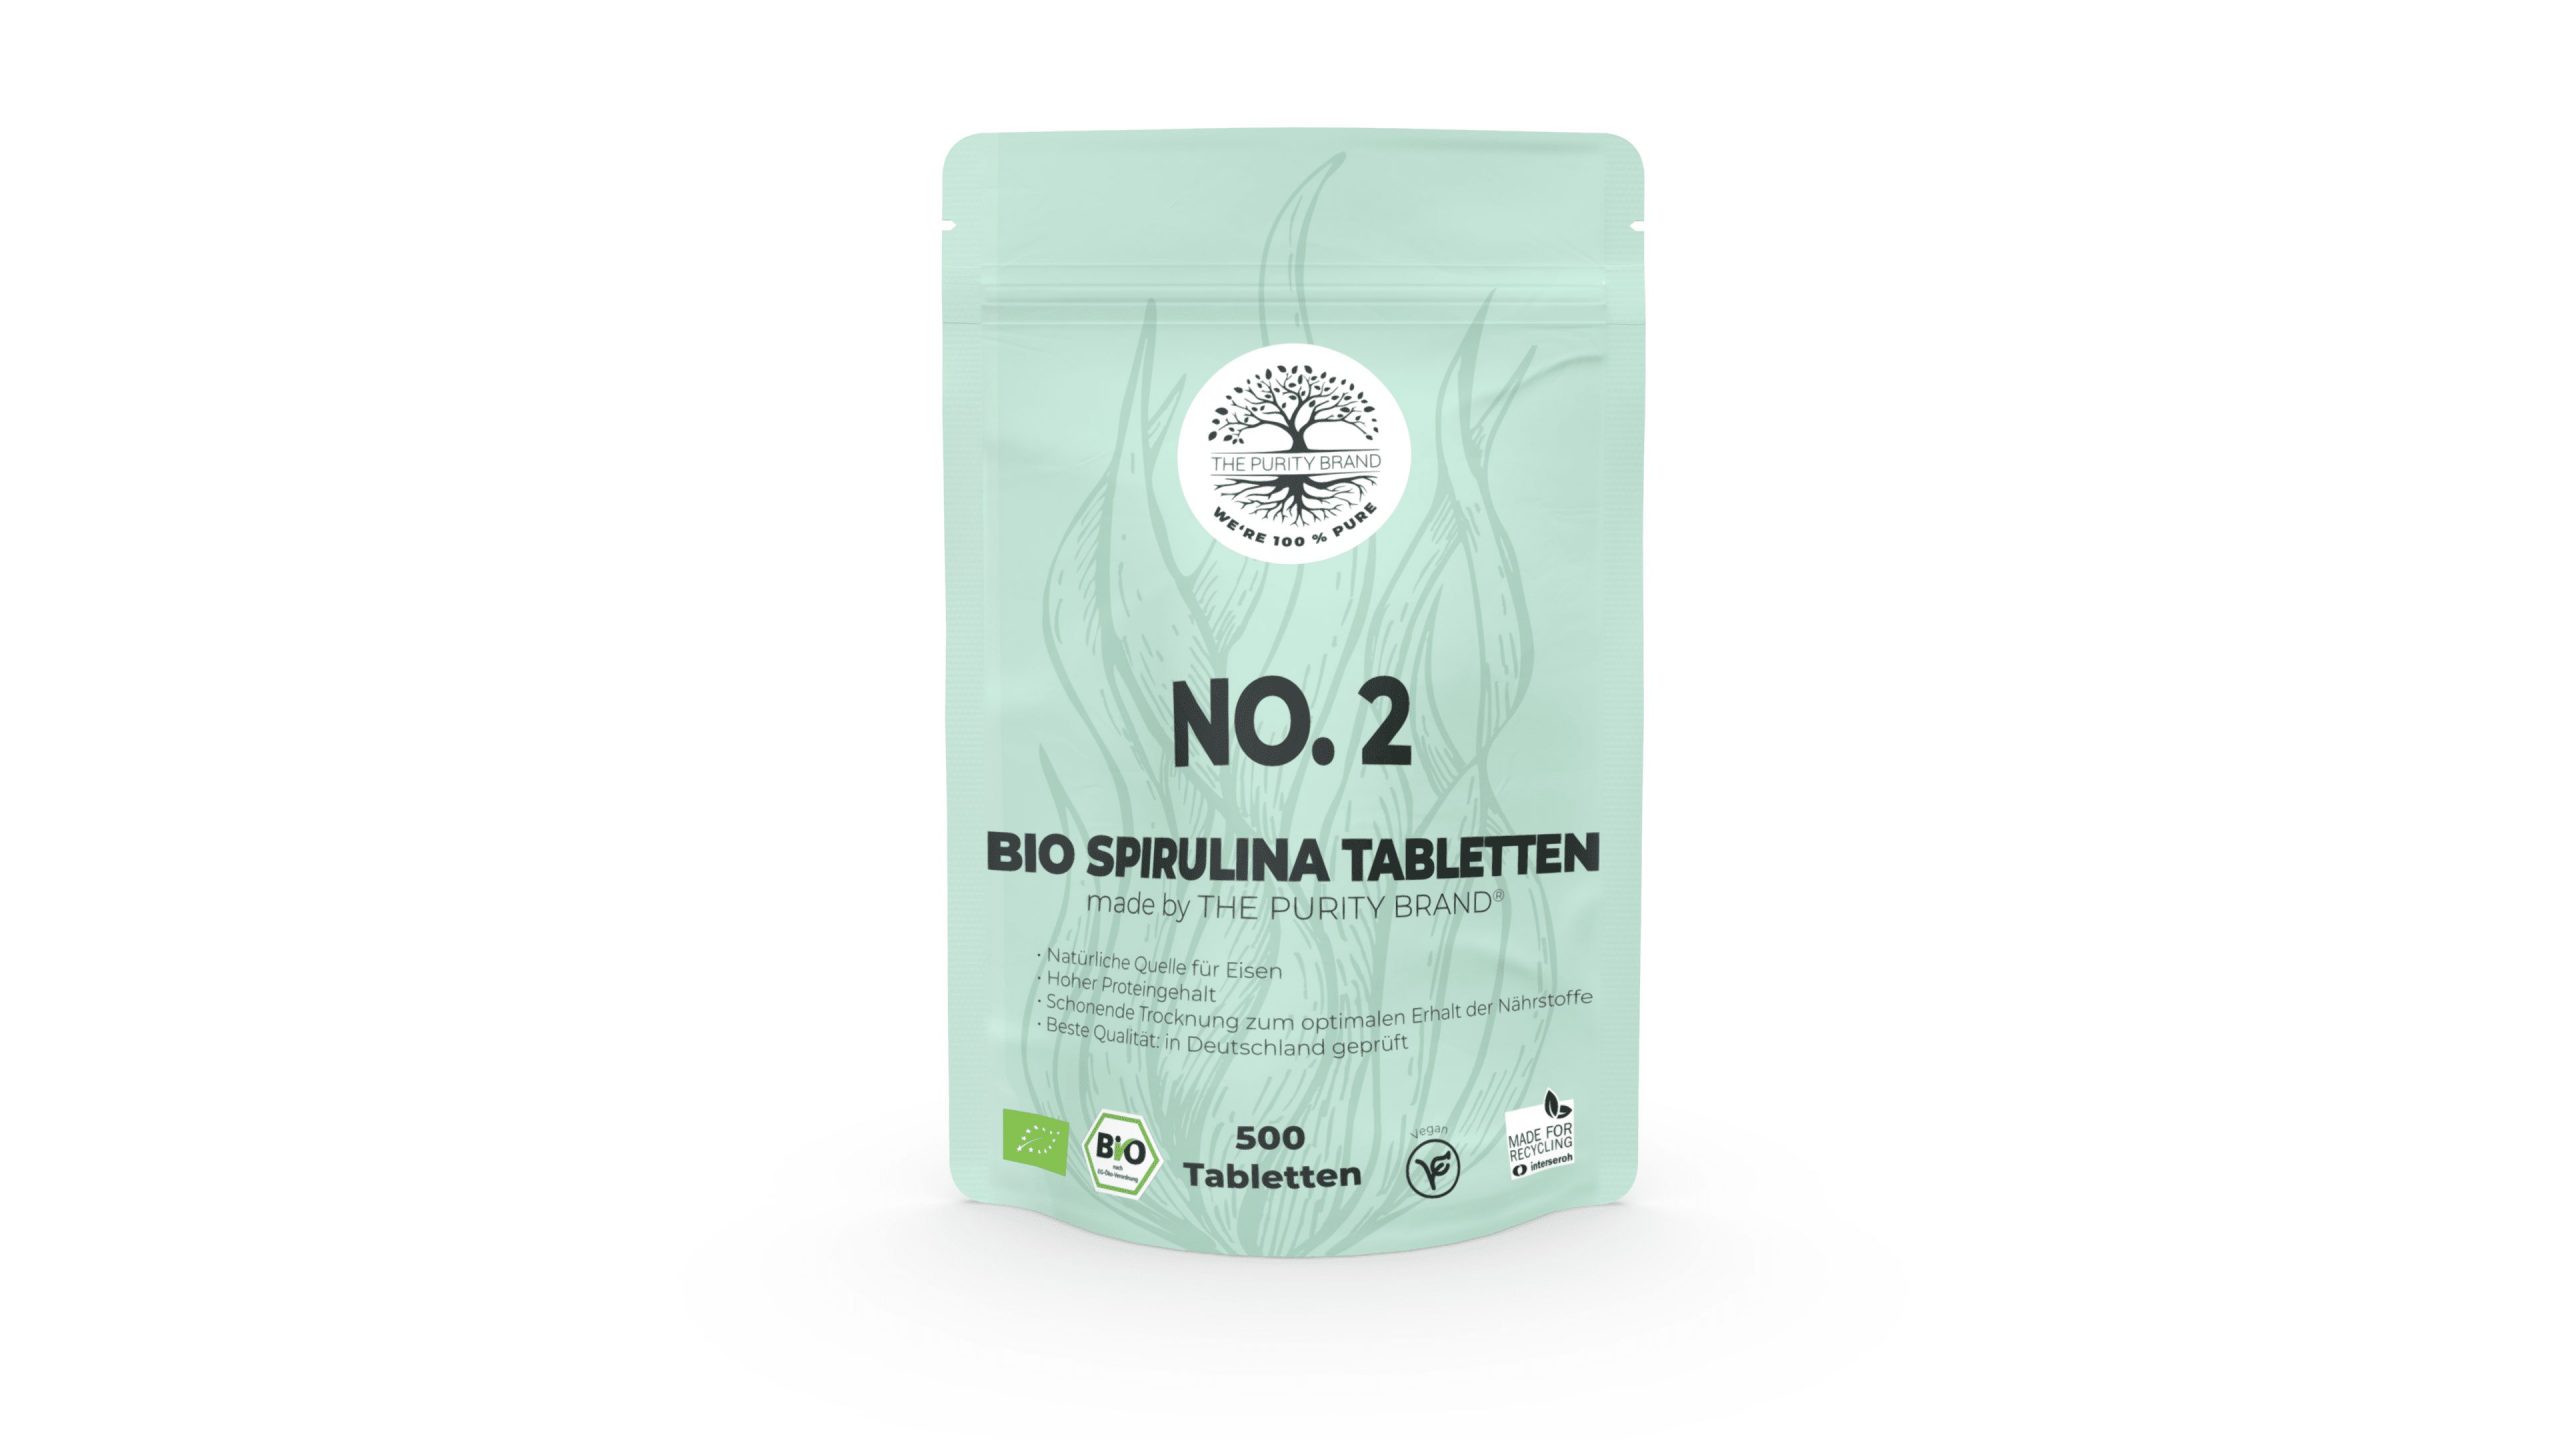 No. 2 Bio Spirulina Tabletten Vorderseite